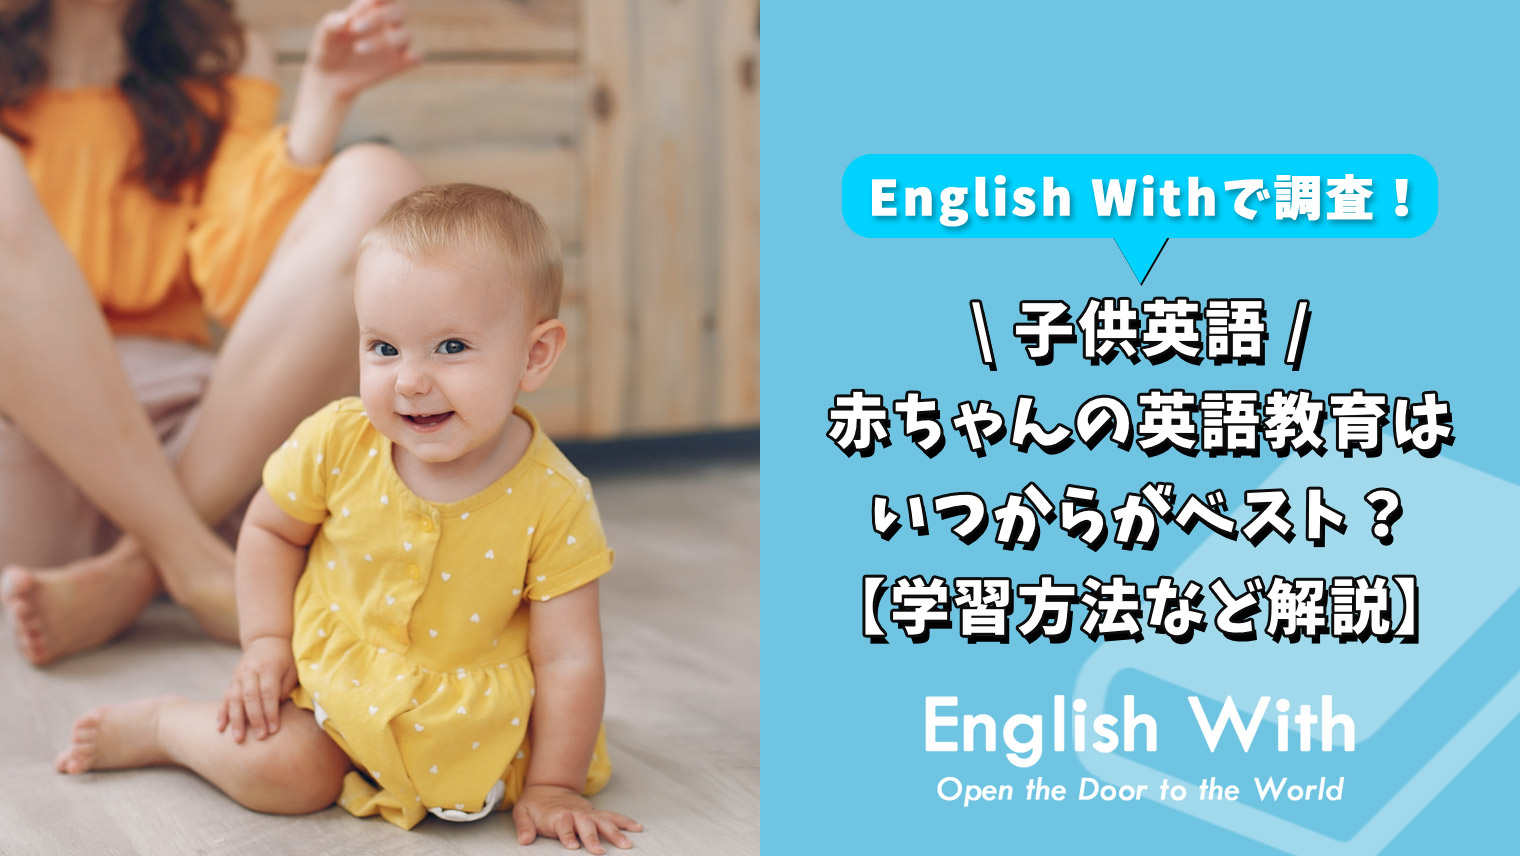 赤ちゃんの英語教育はいつからがベスト 学習方法など解説 英語学習メディアenglish With